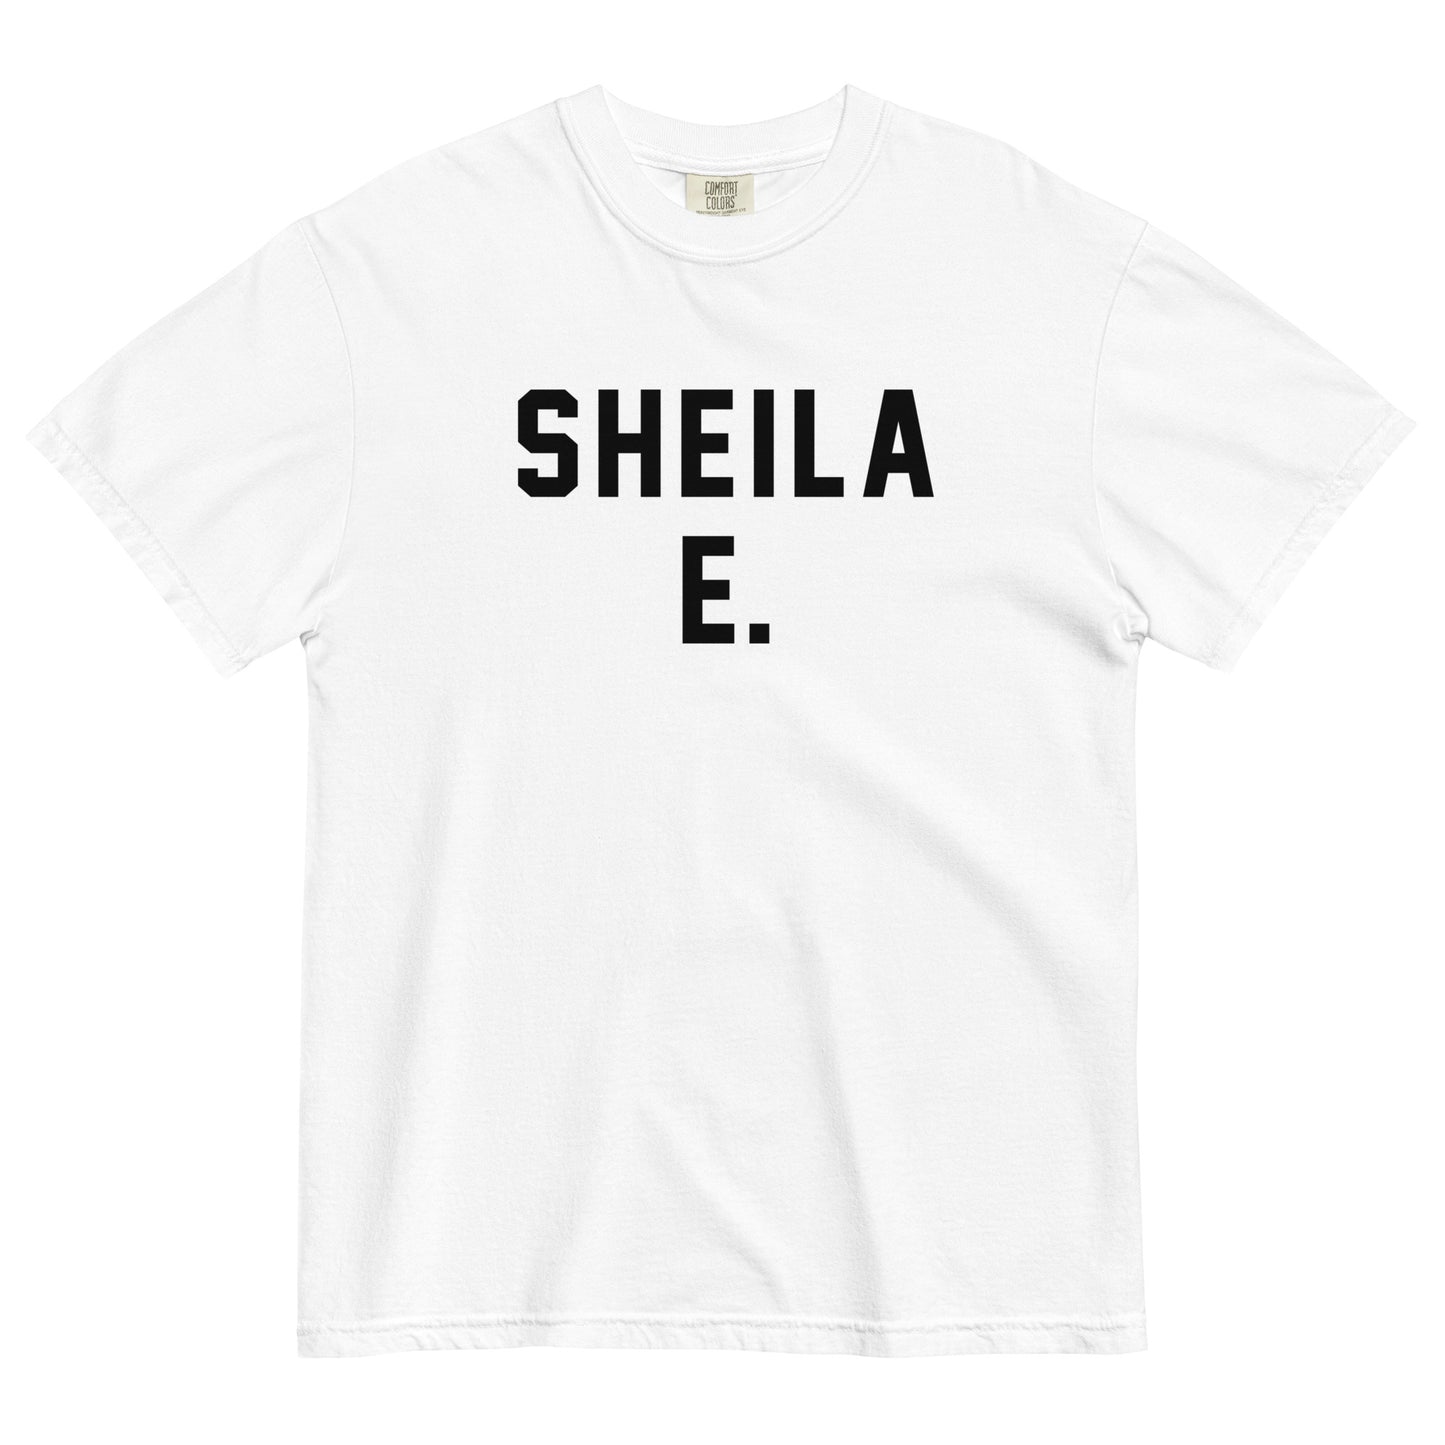 SHEILA E.